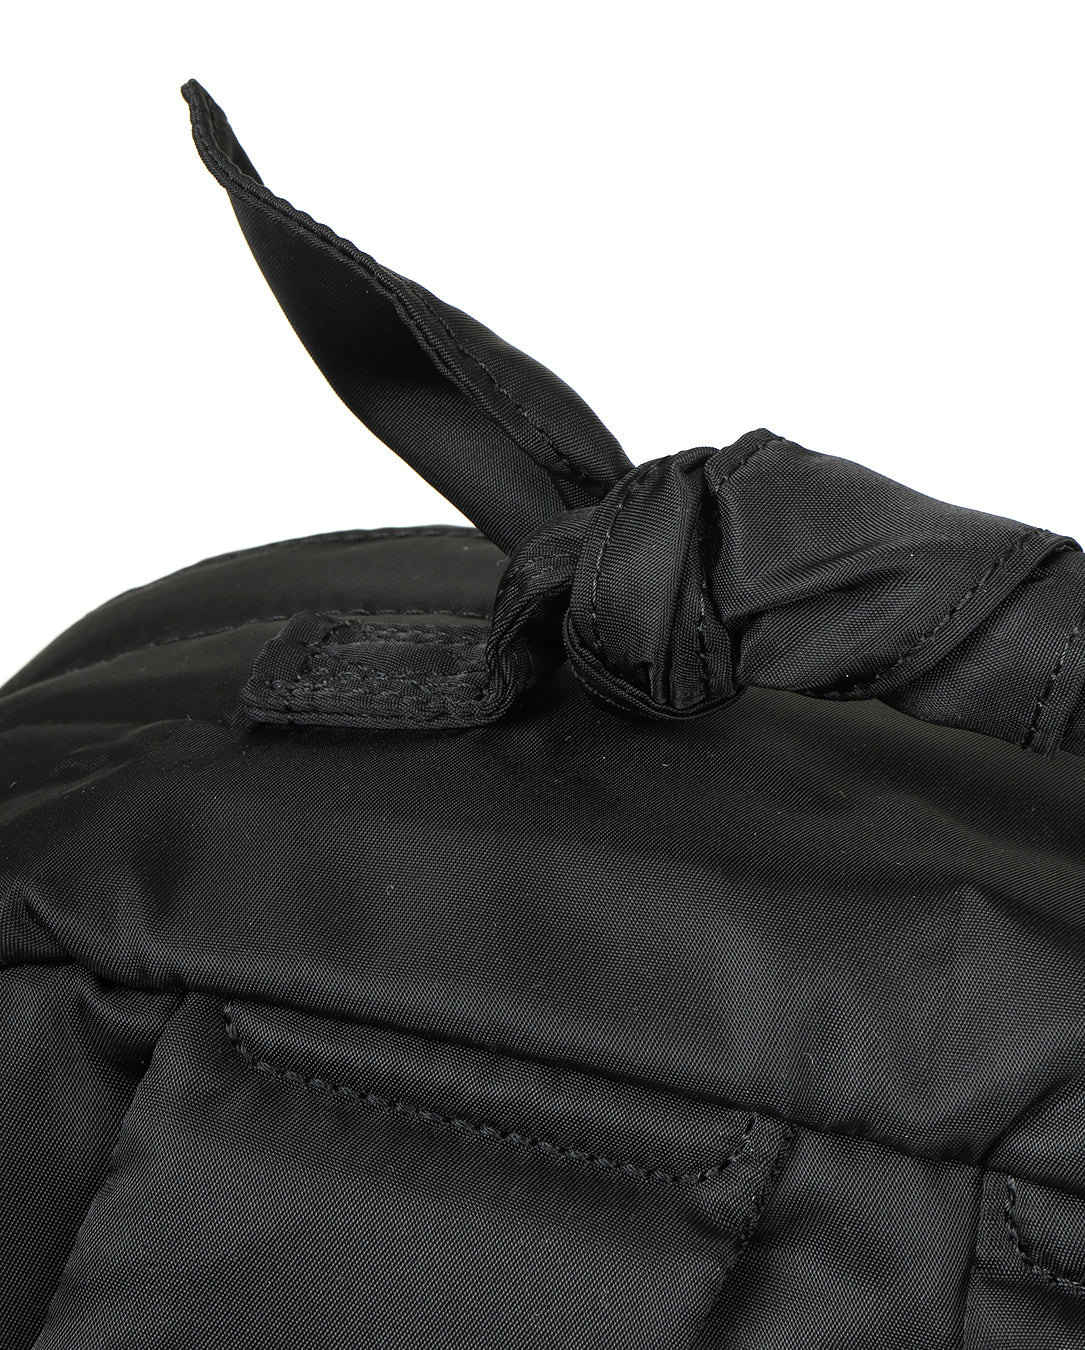 Backpack PORTER SP black